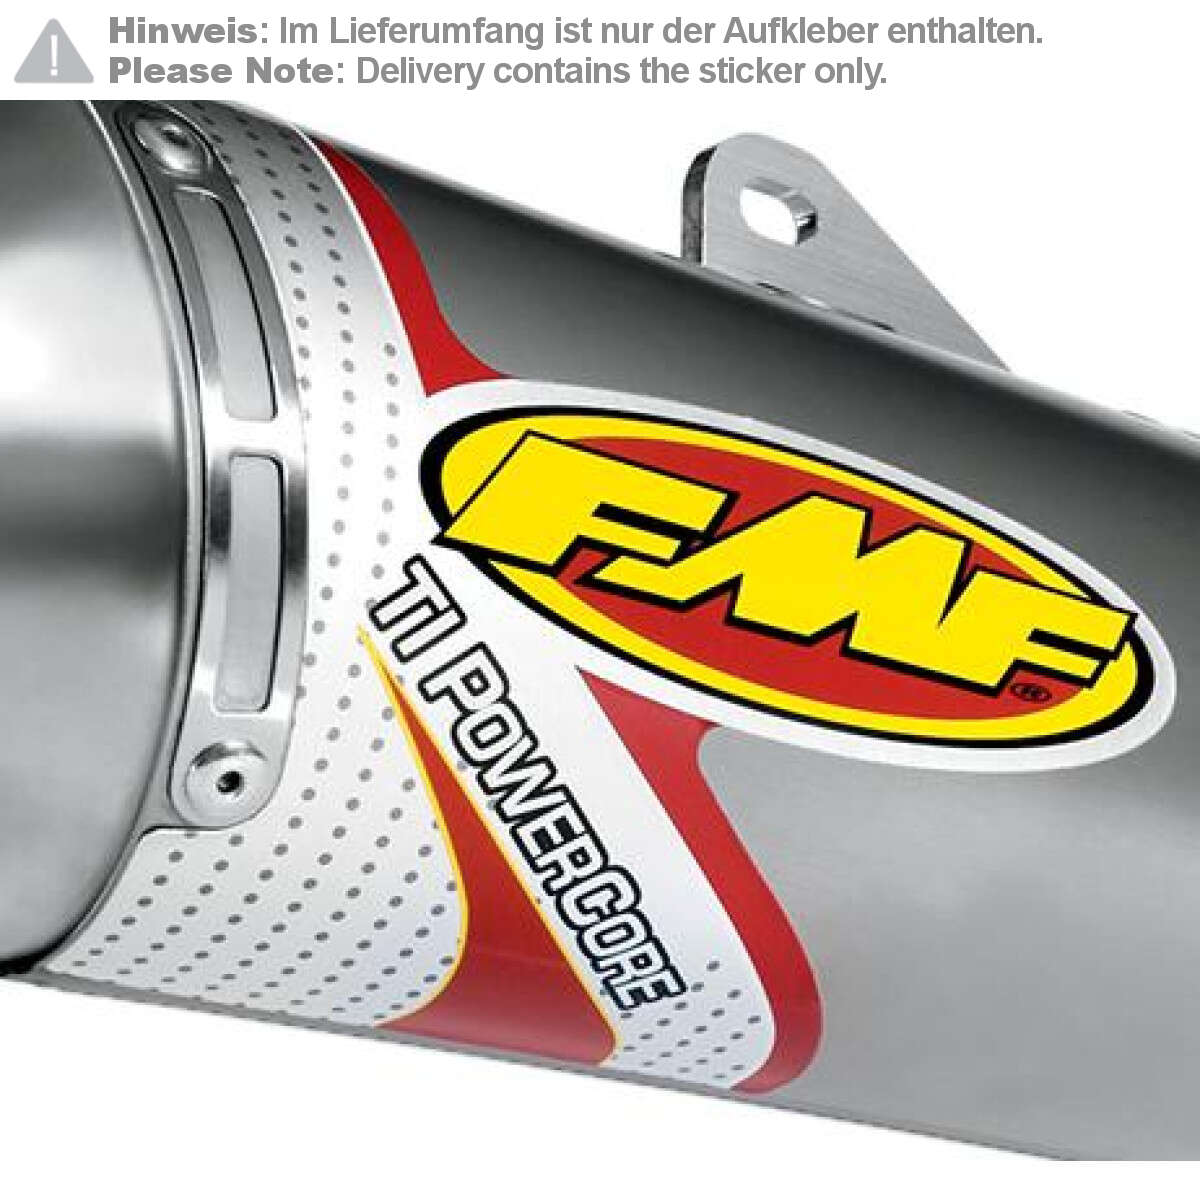 FMF Schalldämpfer-Aufkleber  TI PowerCore, 2er Pack